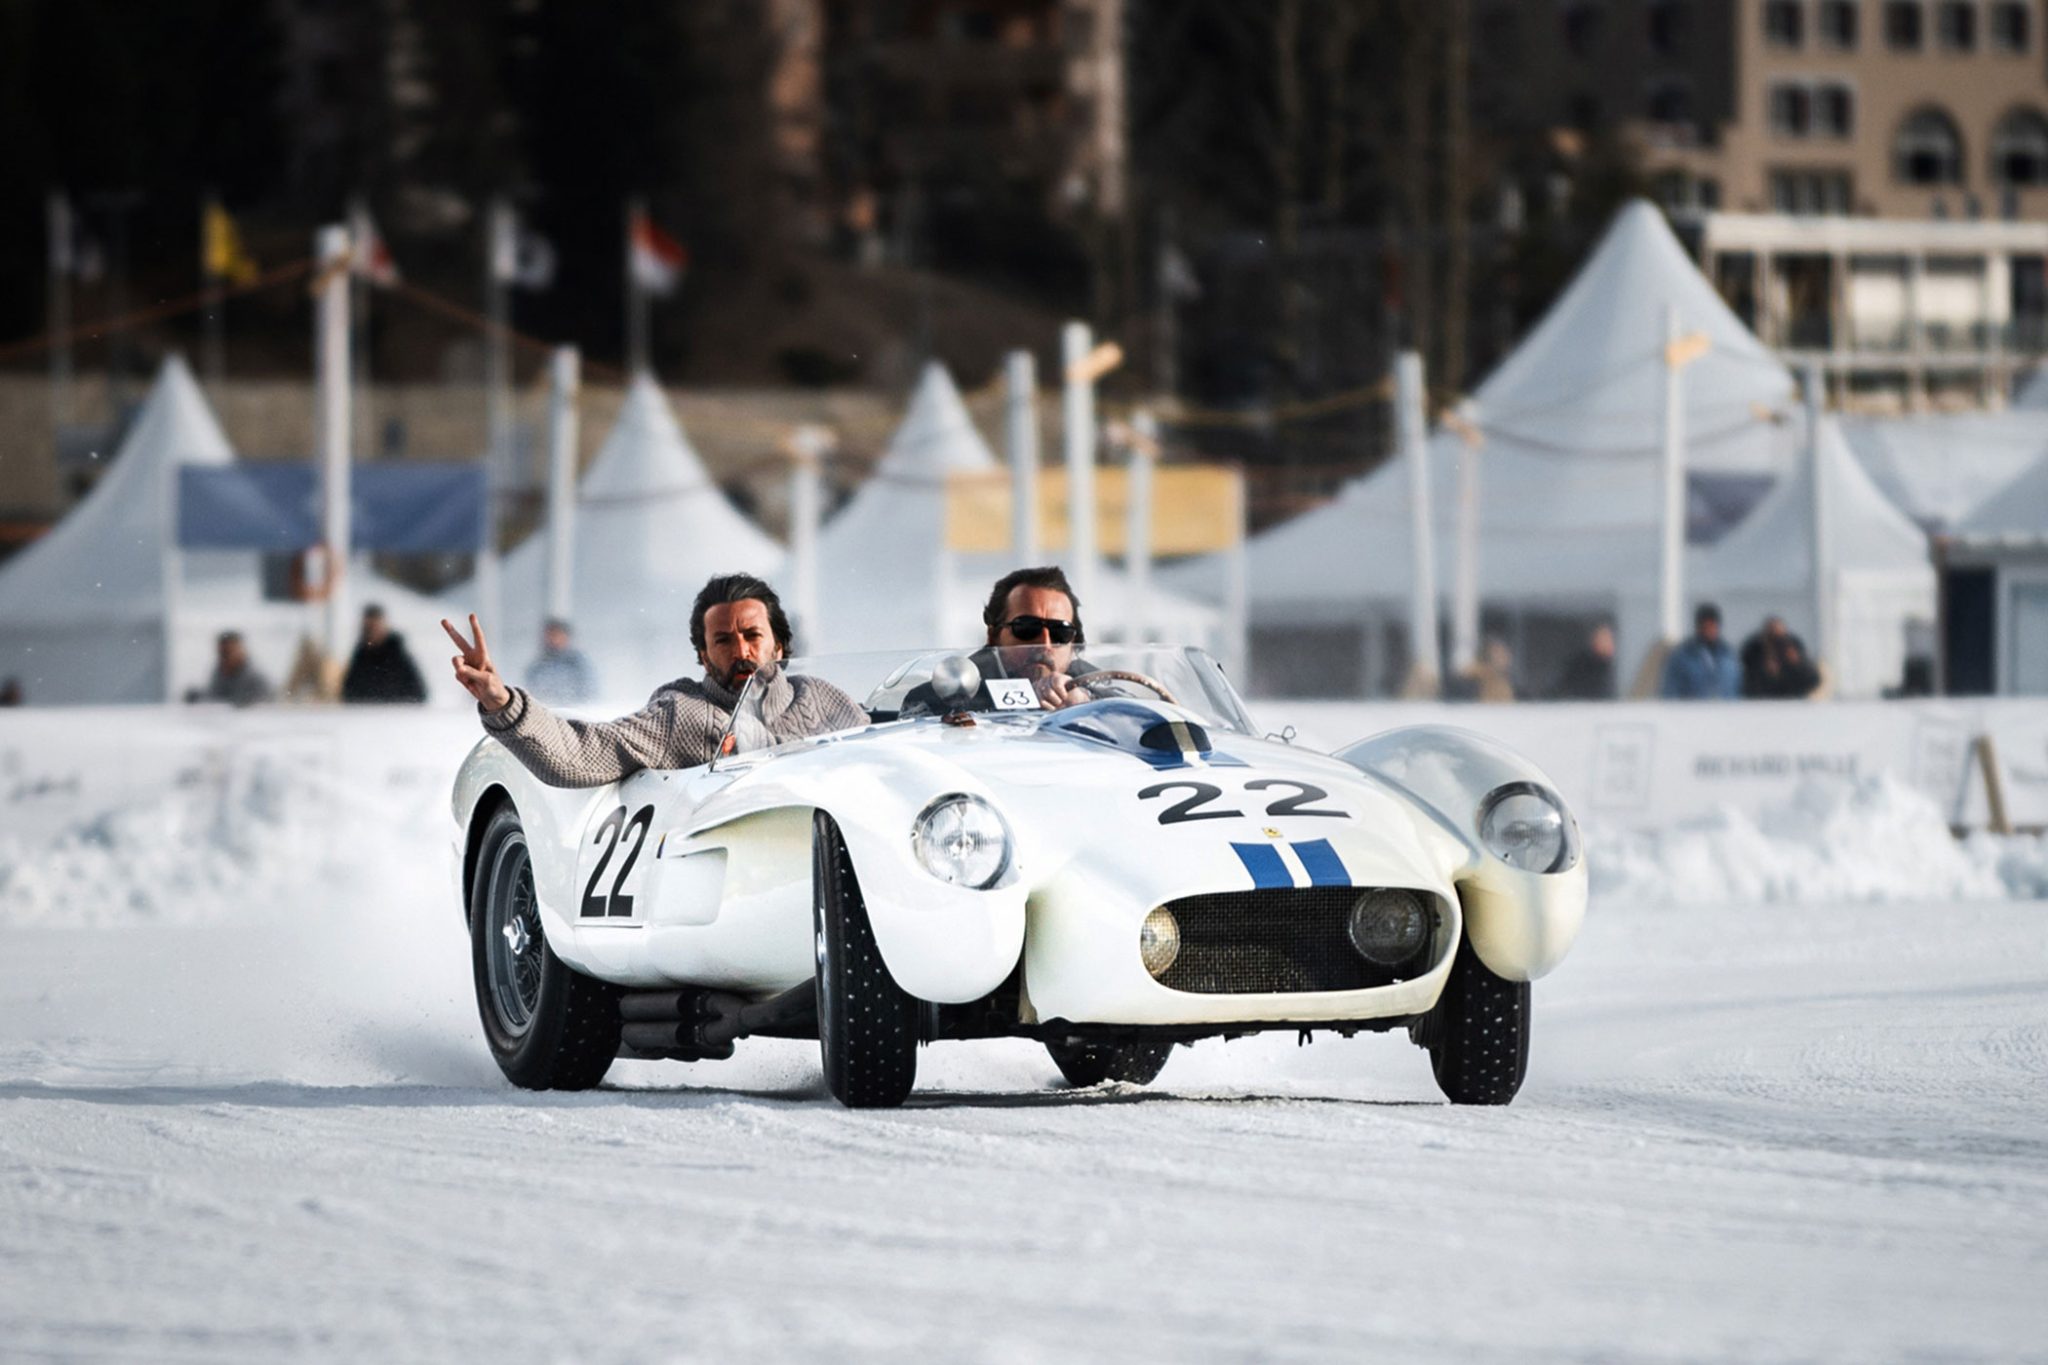 The-Ice-St-Moritz-Richard-Mille-Ferrari-250-Testa-Rossa-Lucybelle-in-Action